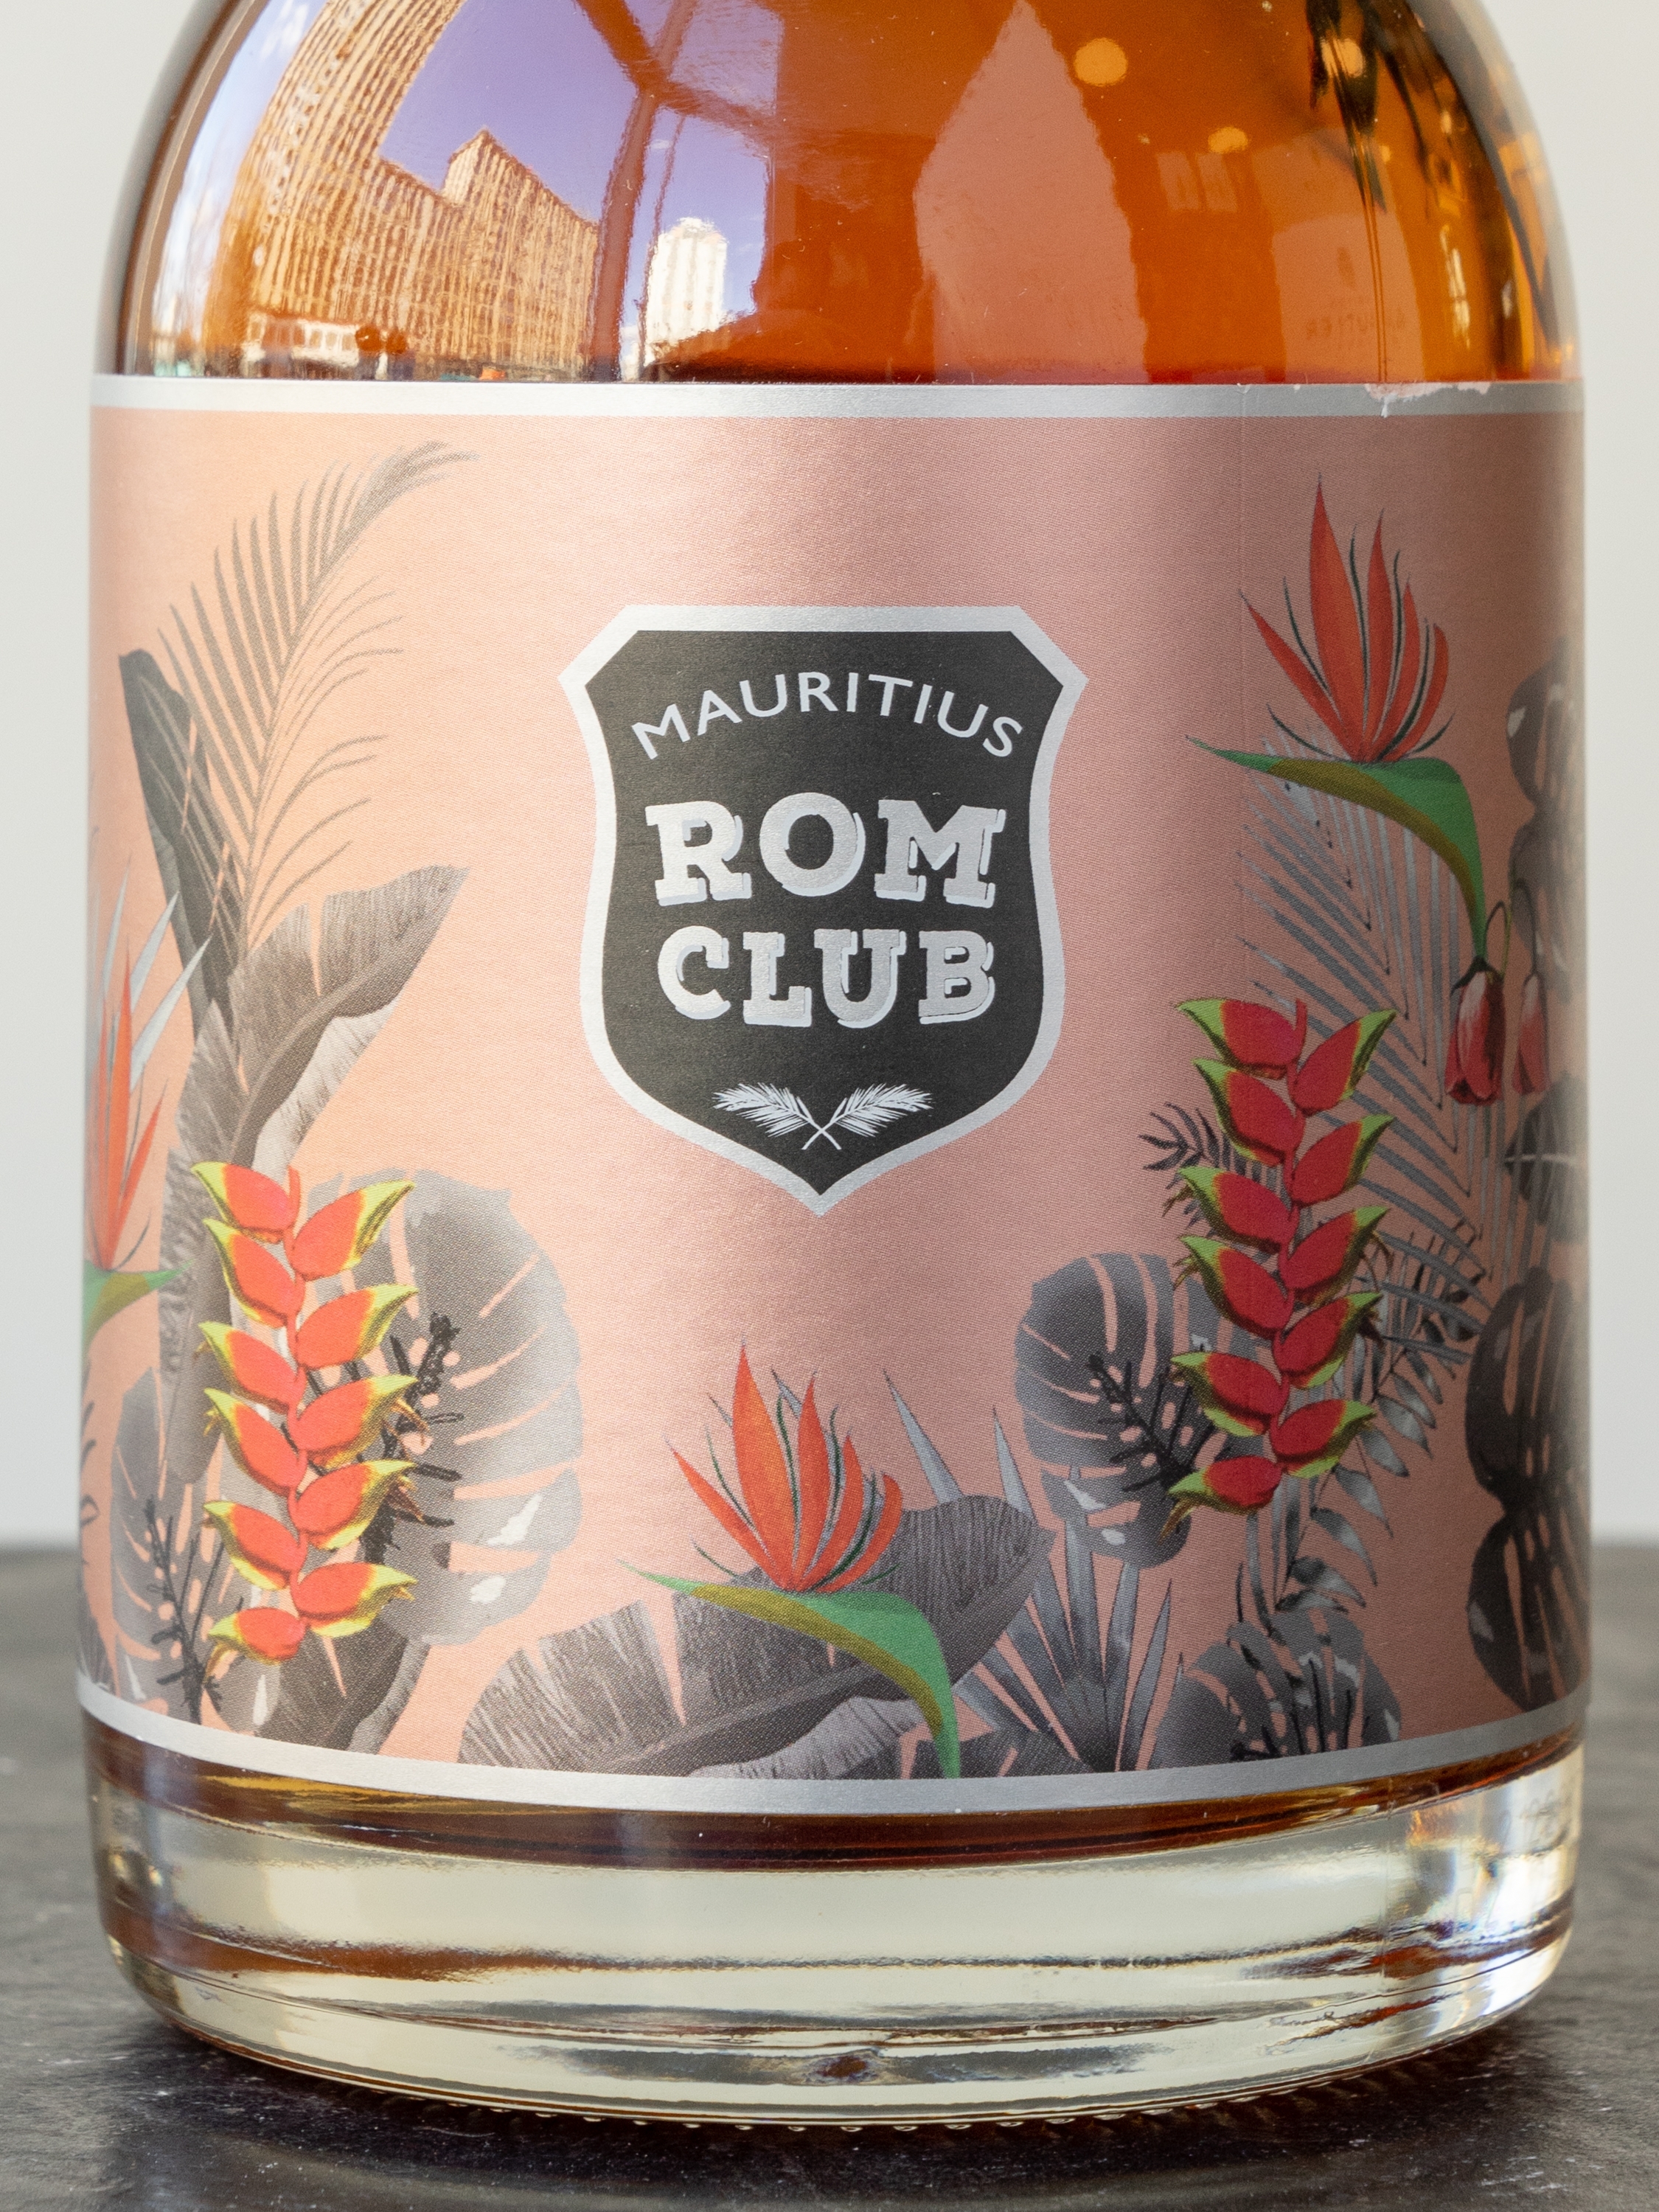 Ром Mauritius Rom Club Sherry Spiced / Мауритиус Ром Клаб Шерри Спайсед  0,7л 40%   Маврикий